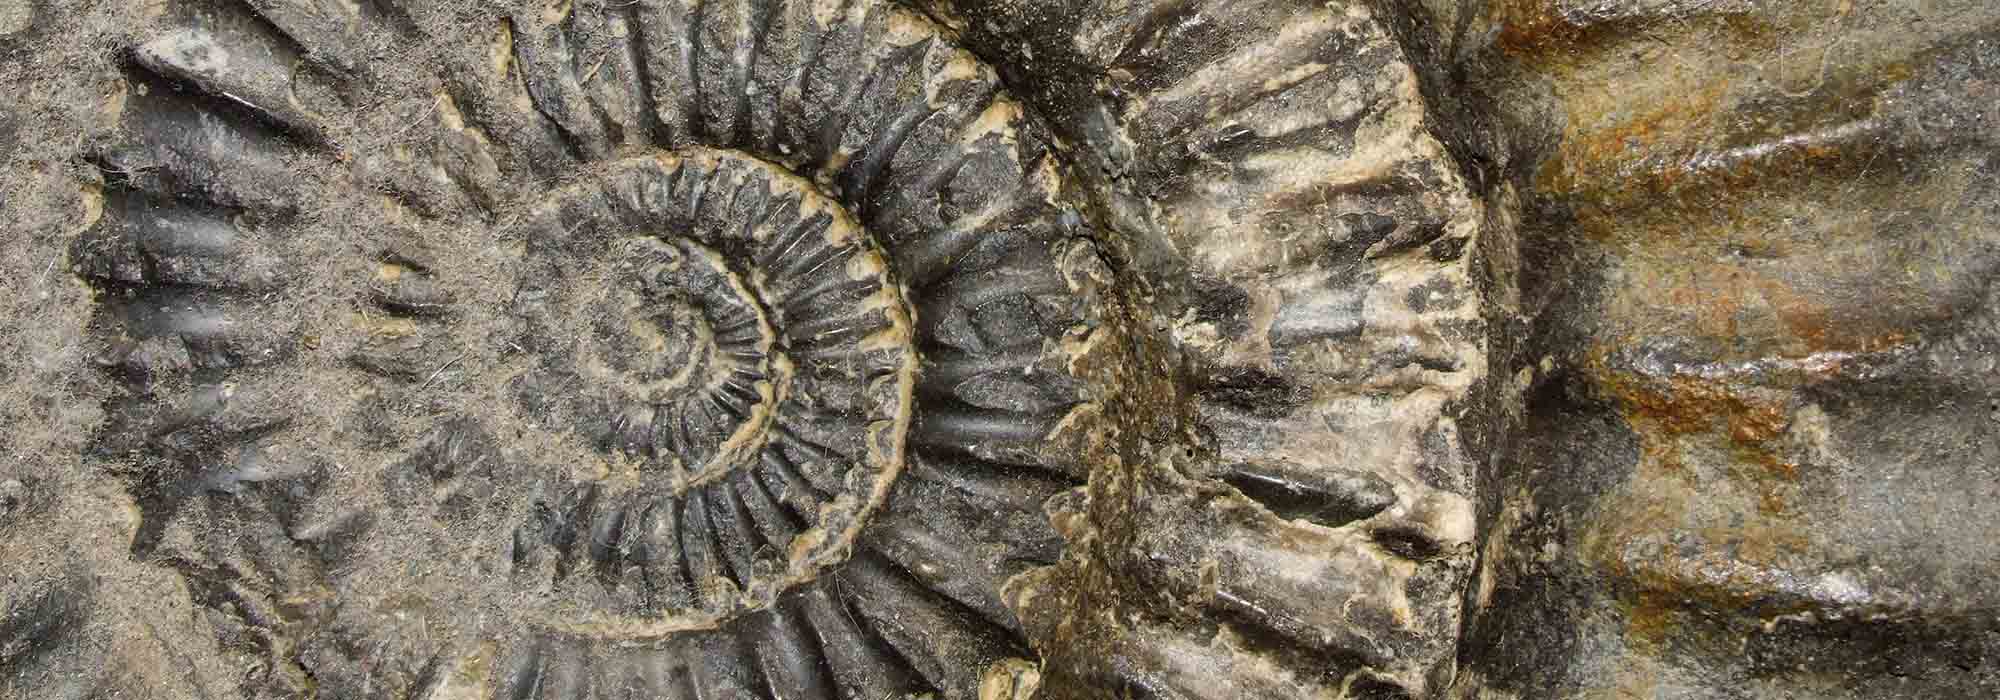 Ein spiralförmiges Fossil